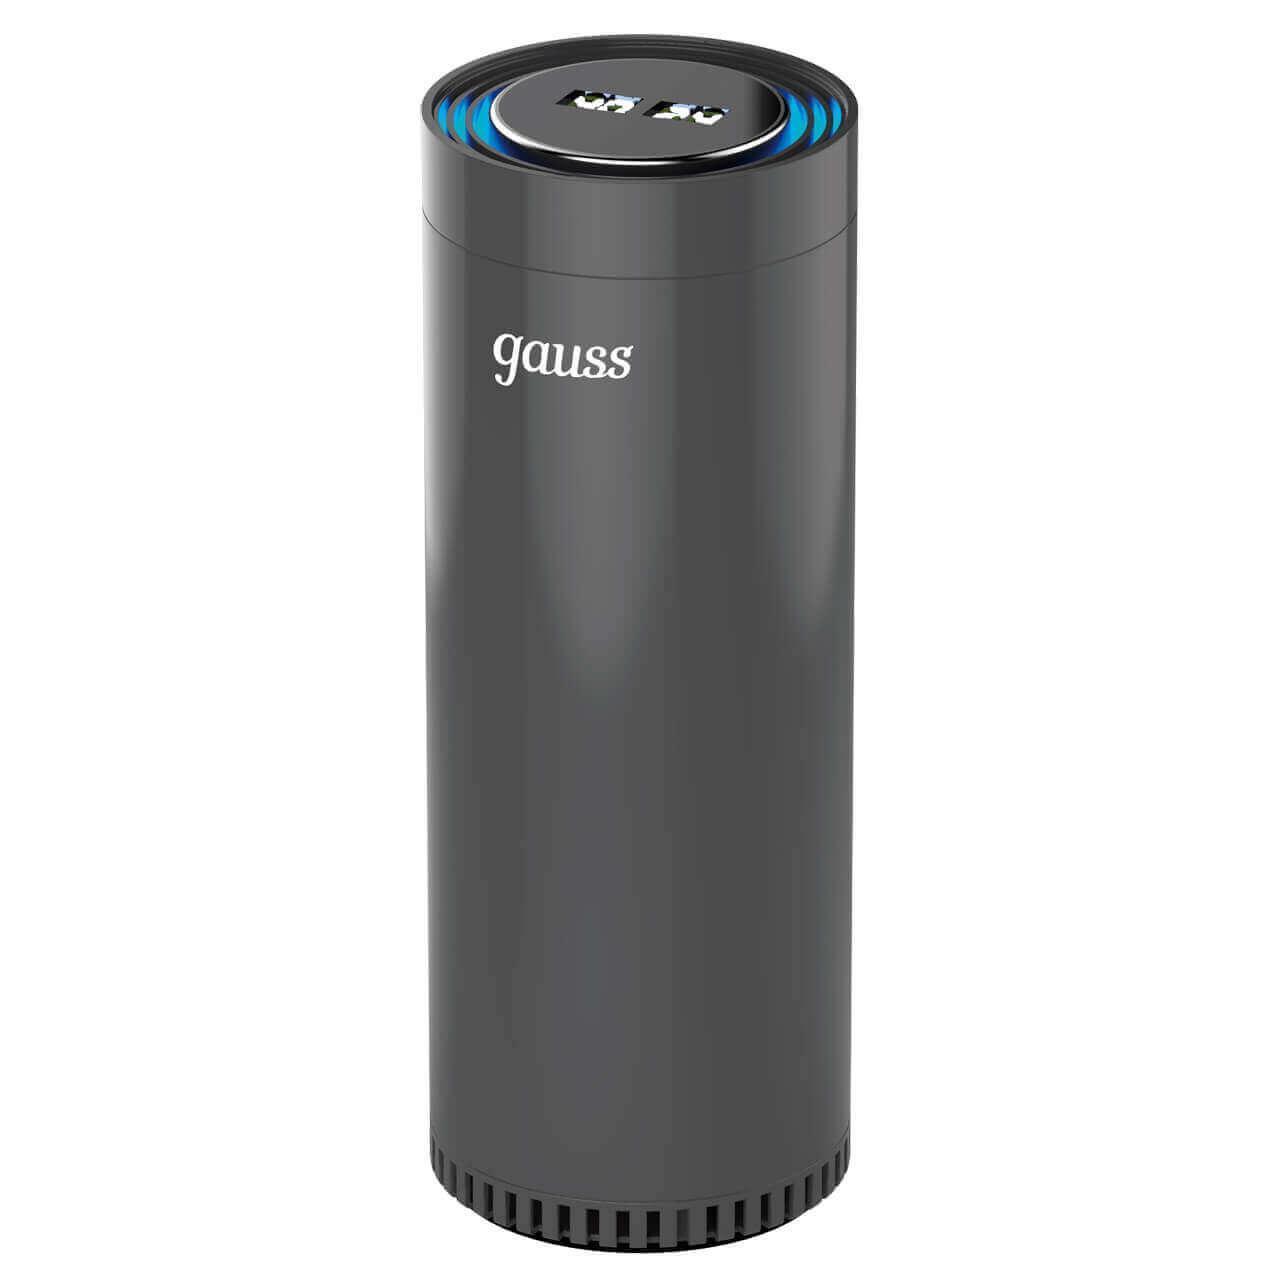 бактерицидный очиститель рециркулятор воздуха gauss guard gr020 Очиститель воздуха Gauss guard чёрный с ионизатором GR020